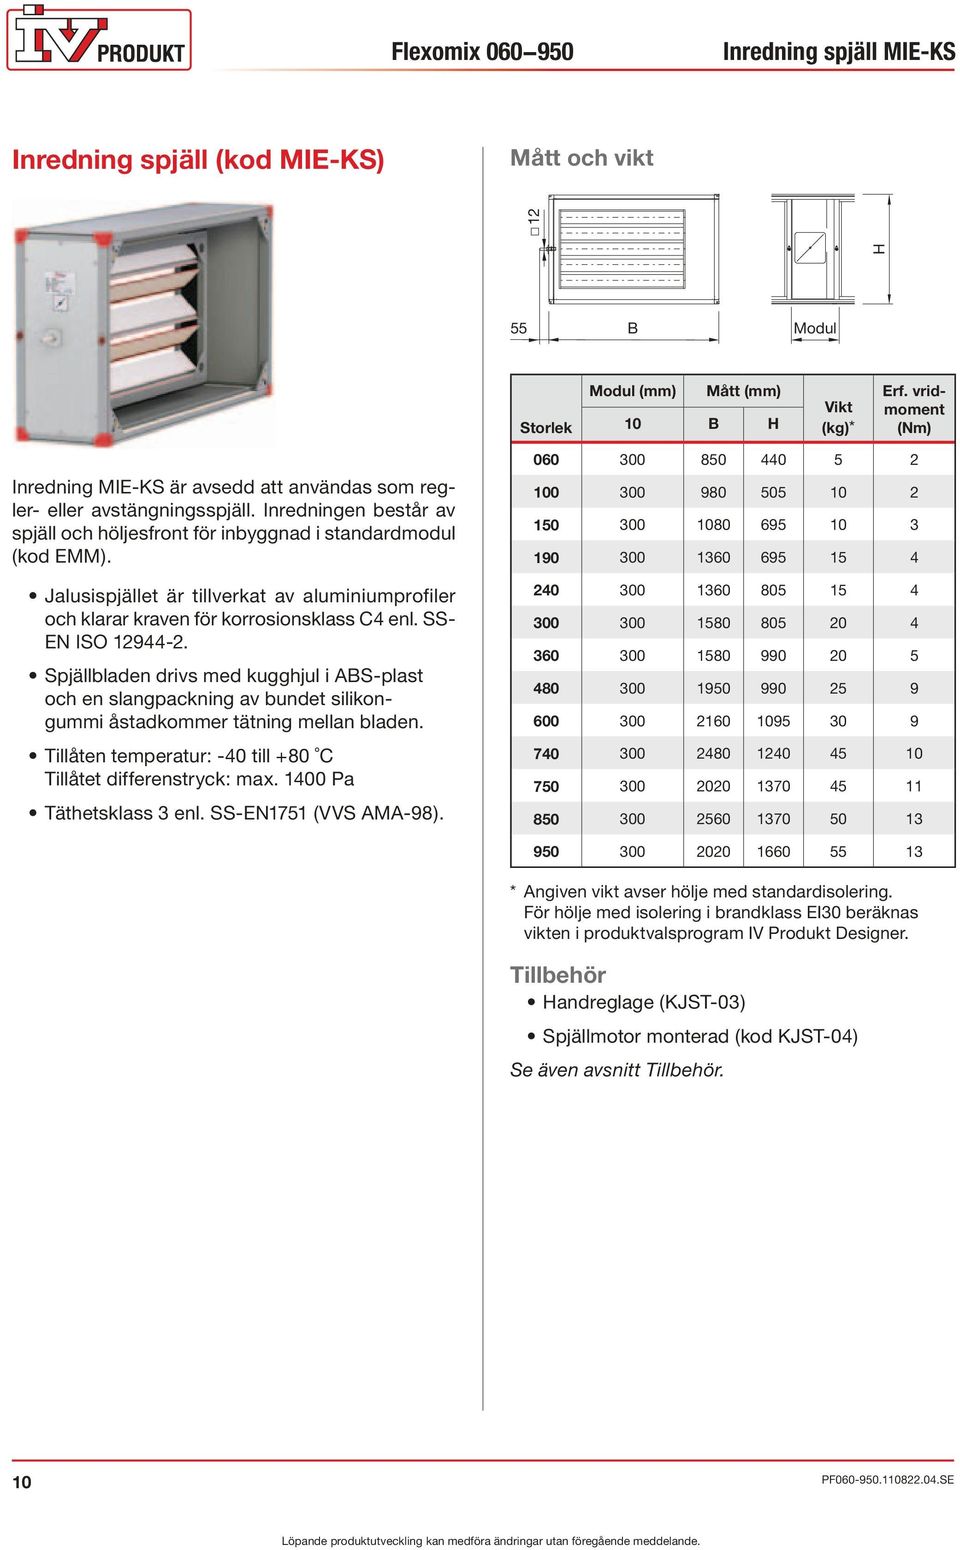 Jalusispjället är tillverkat av aluminiumprofiler och klarar kraven för korrosionsklass C4 enl. SS- EN ISO 12944-2.